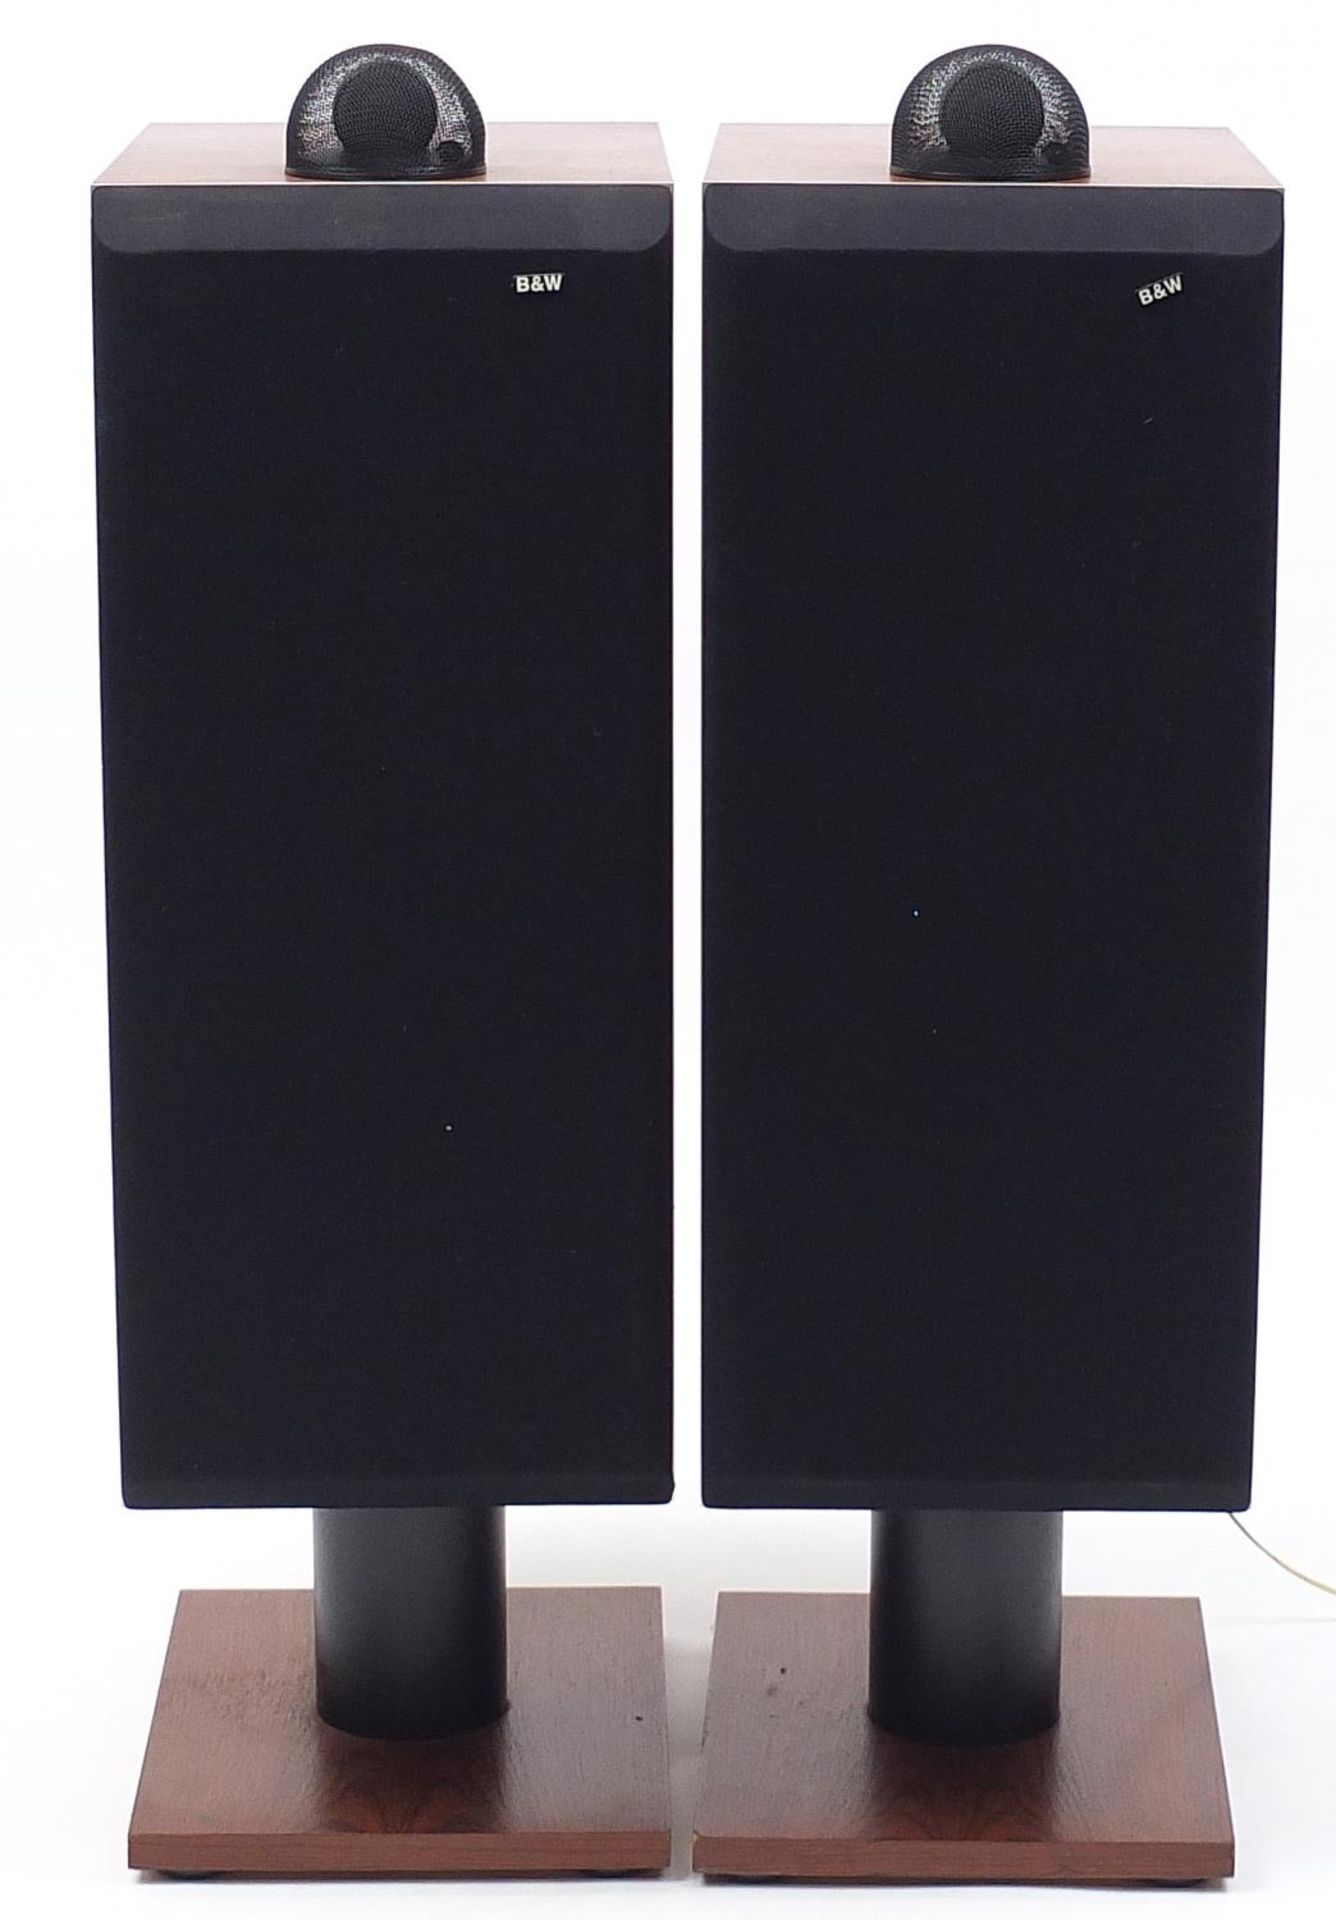 Pair of Bowers & Wilkins DM7 MK2 rosewood veneer floor standing speakers, number 01399 and 01400,